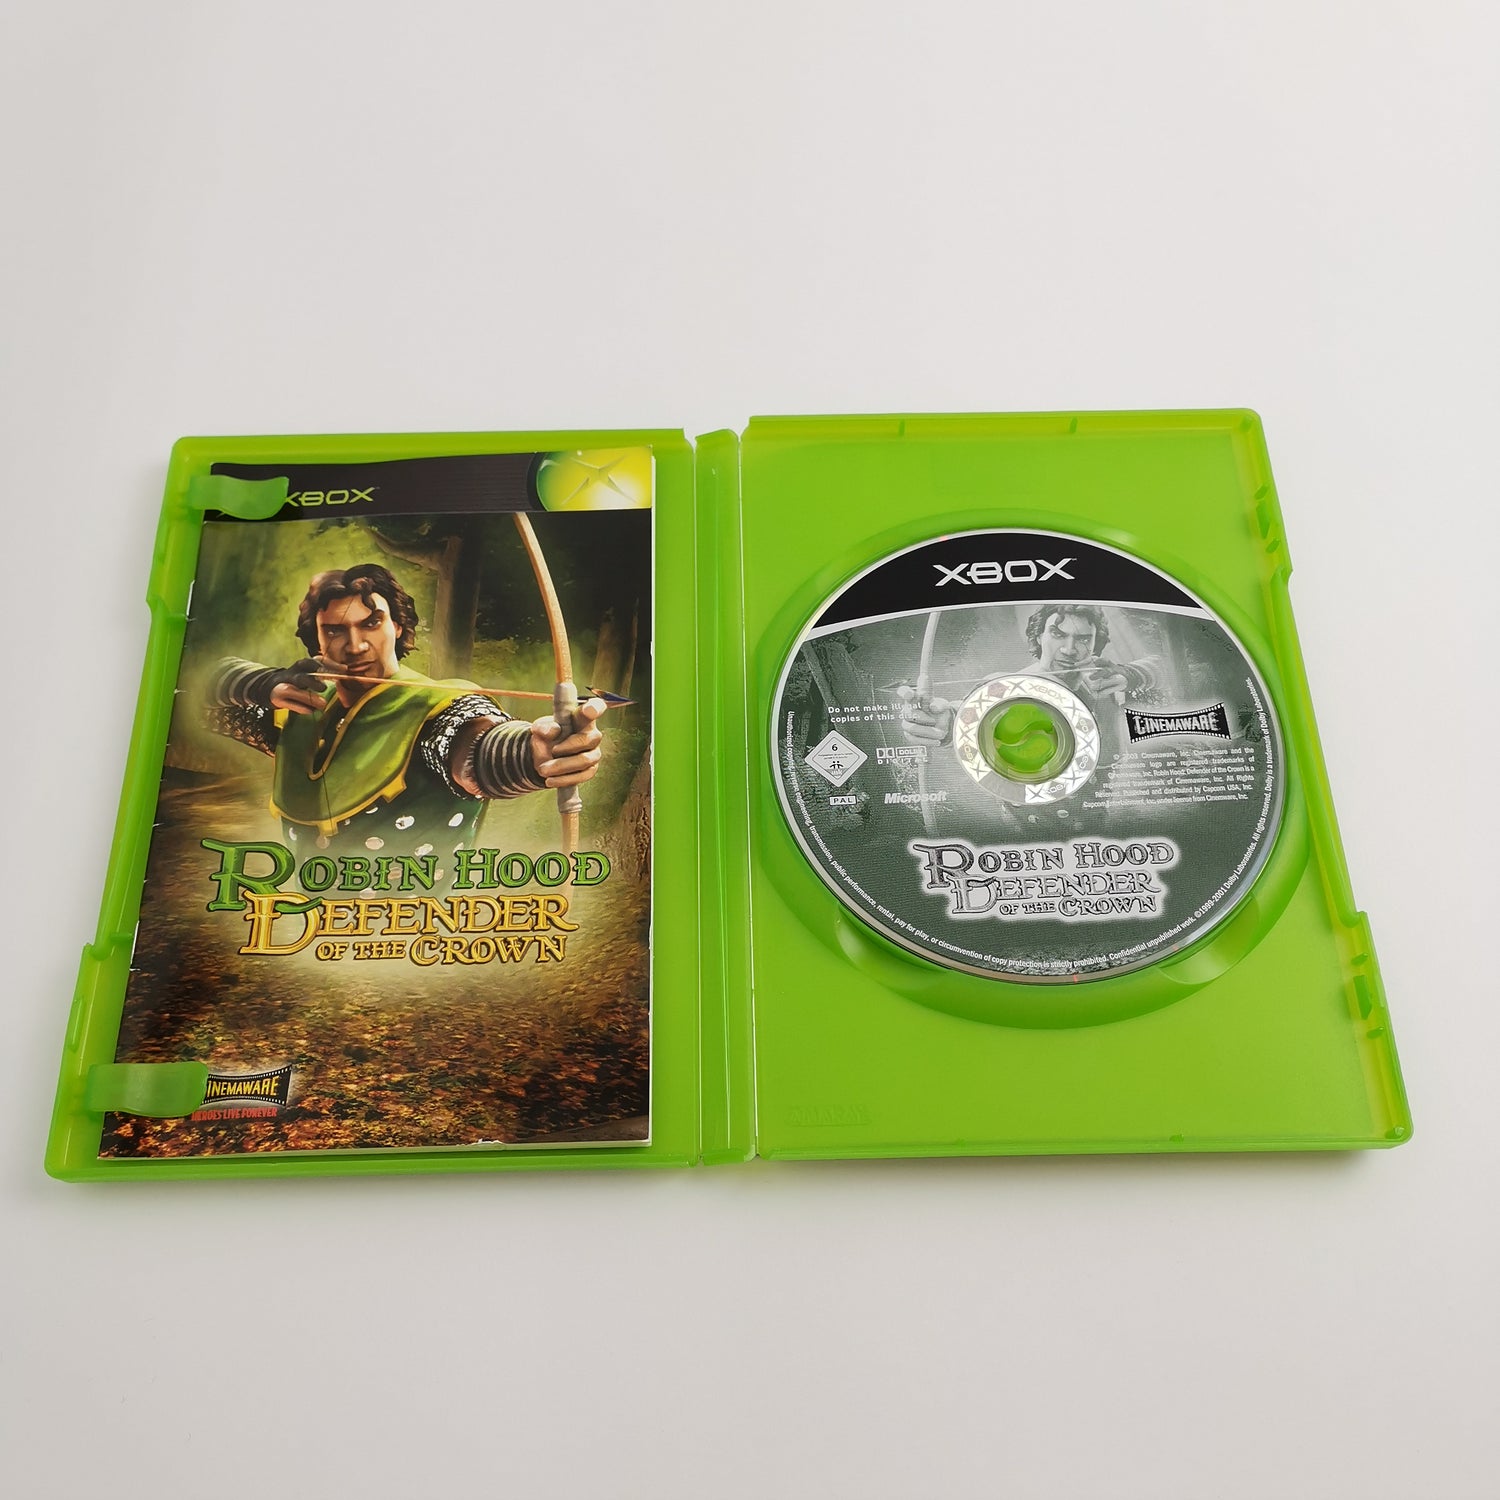 Microsoft Xbox Classic Spiel 